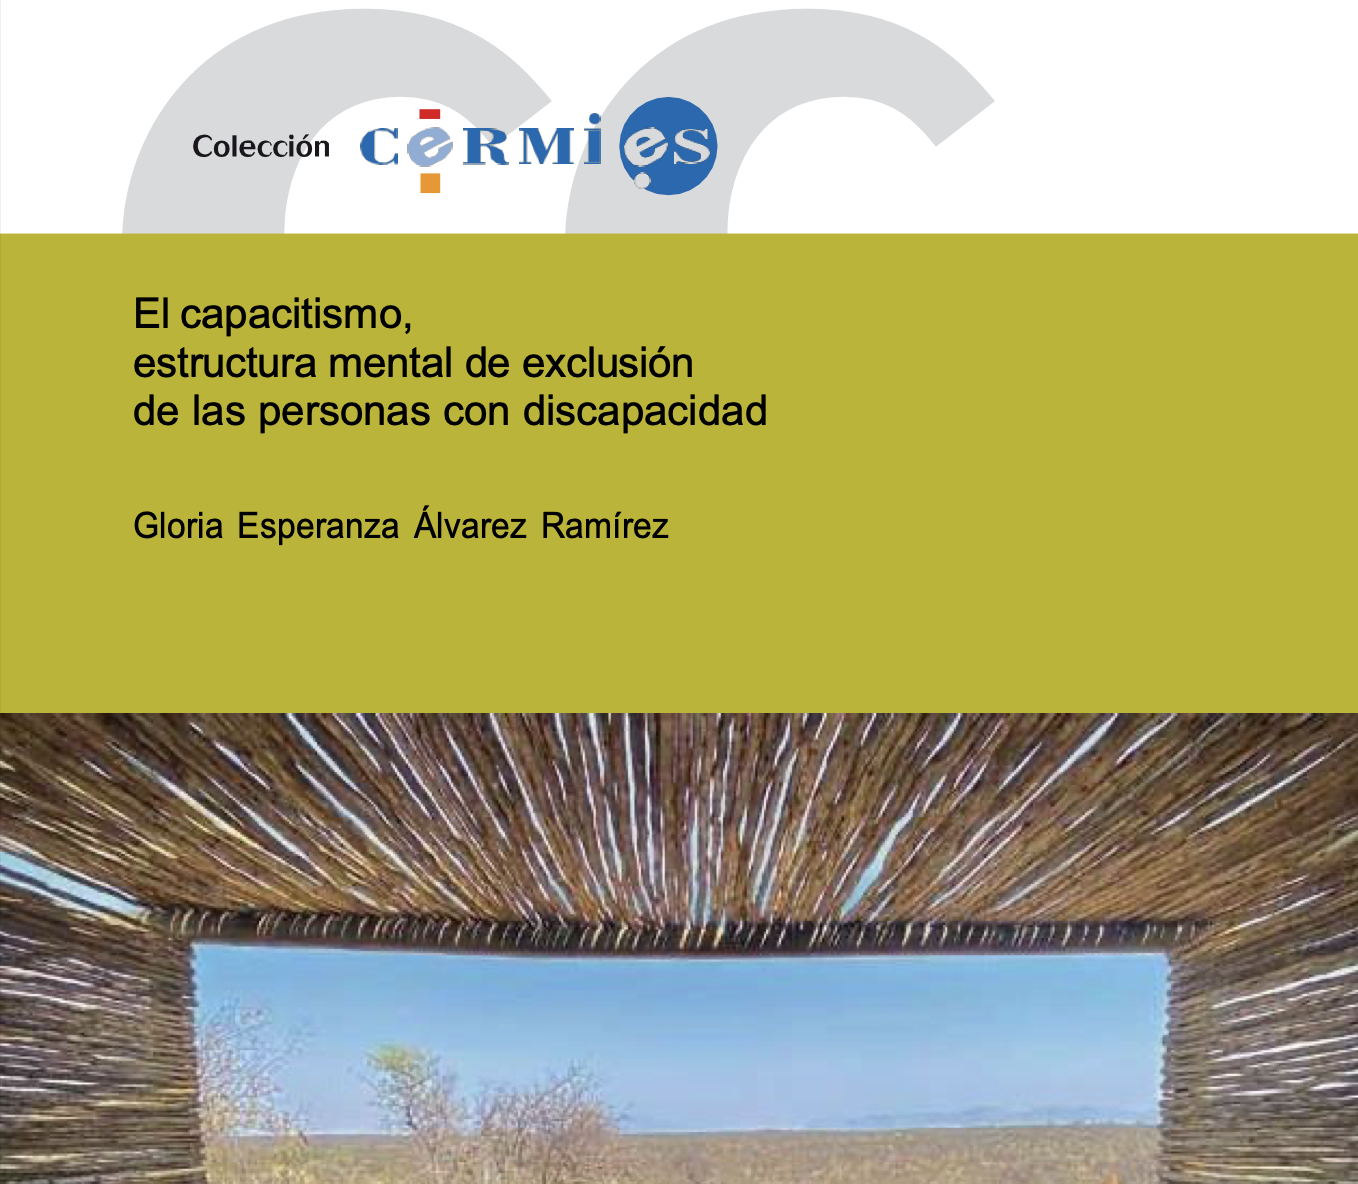 Reproducción parcial de la portada del estudio El capacitismo, estructura mental de exclusión de las personas con discapacidad (CERMI, 2023)